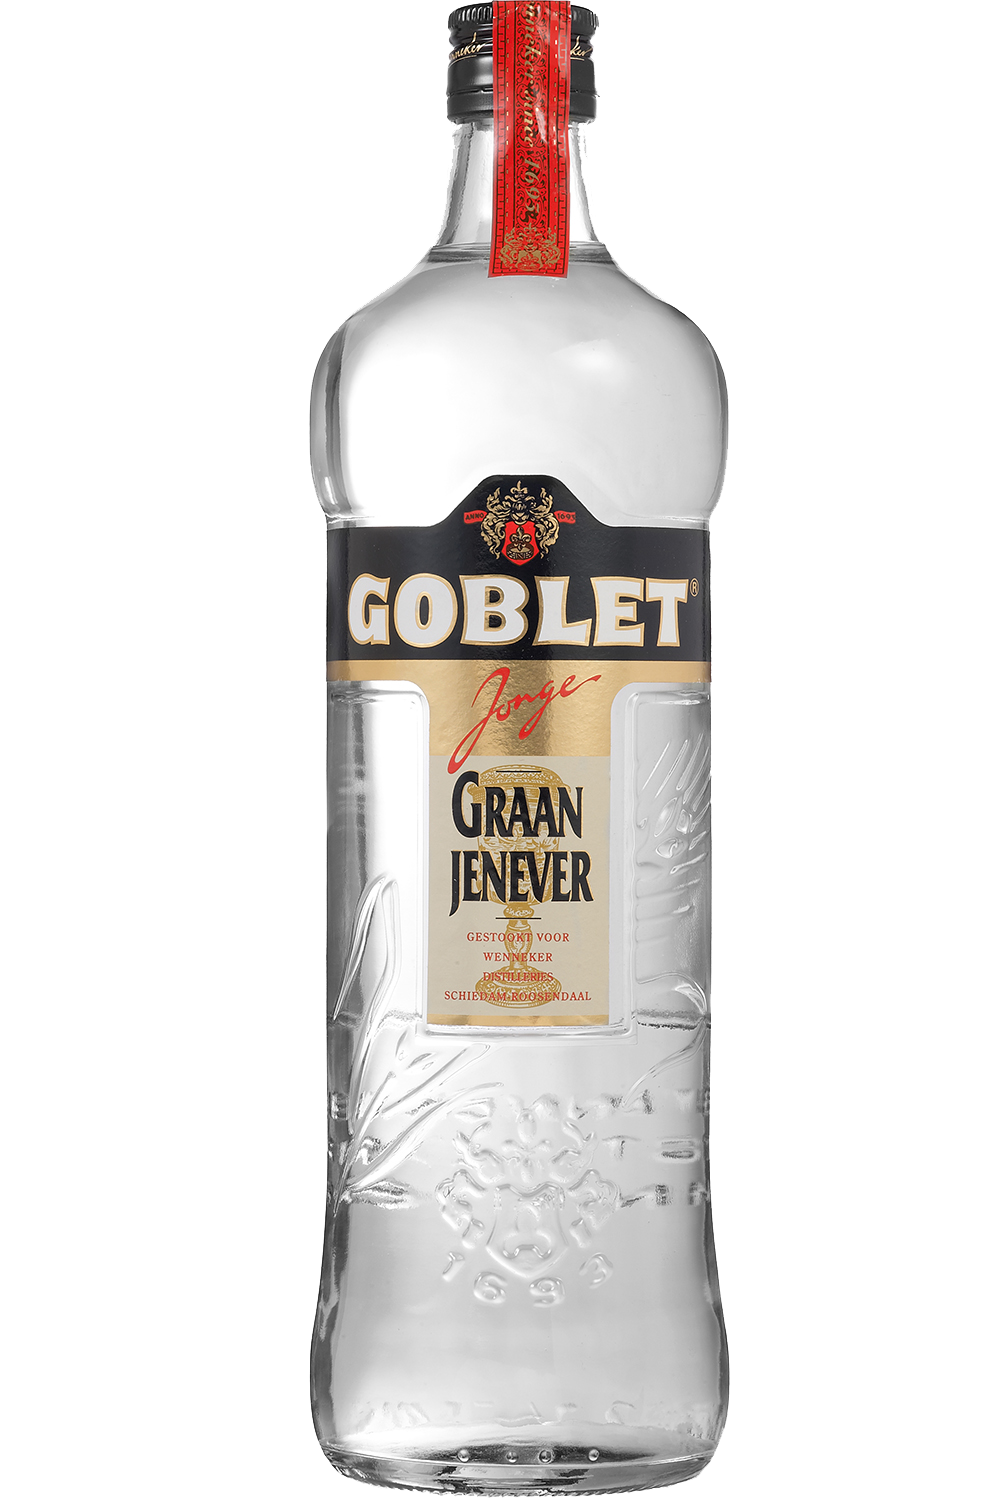 Goblet